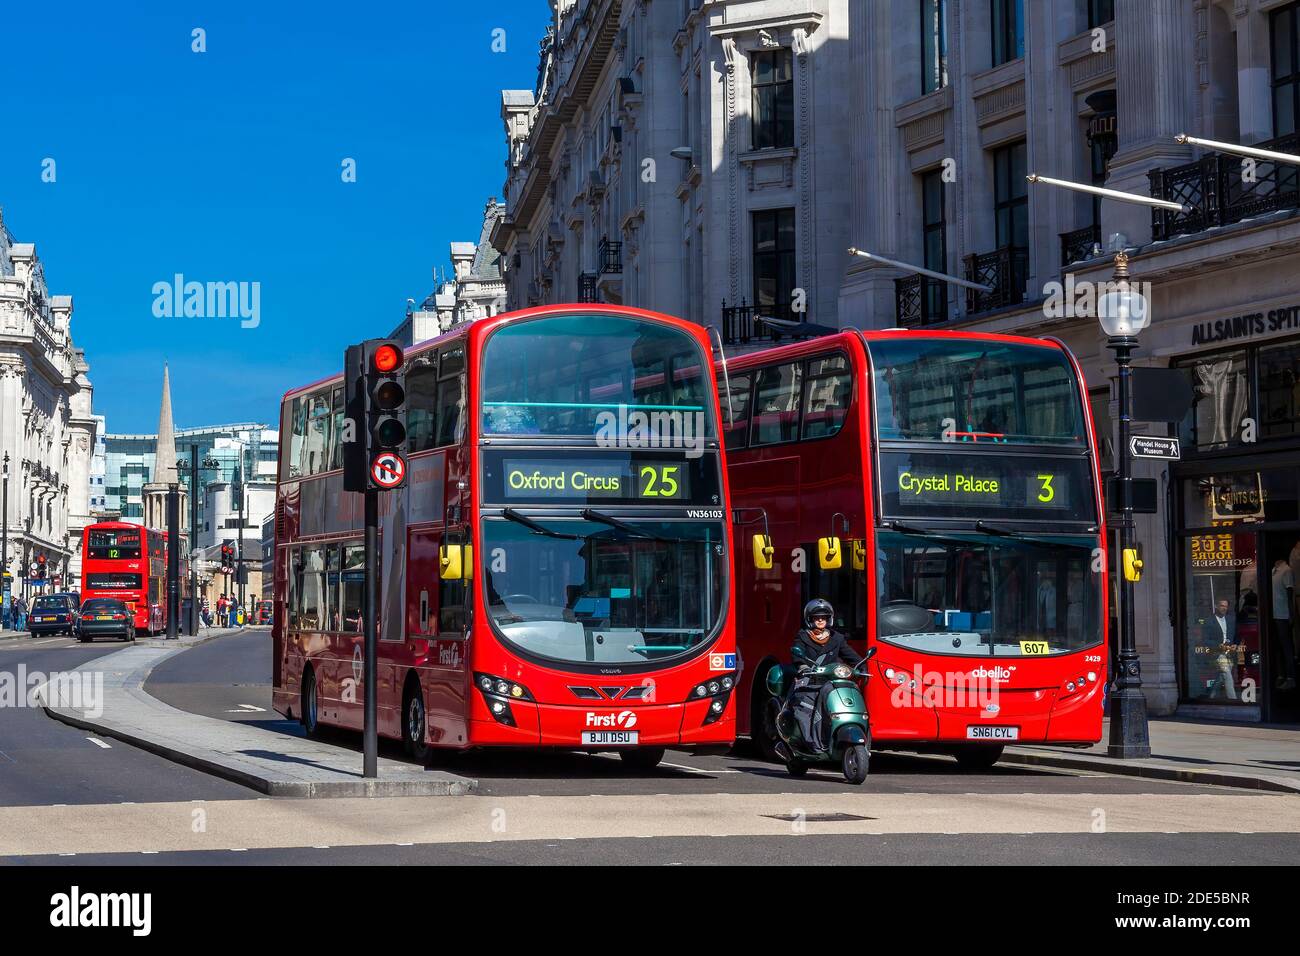 Londra, UK, 1 aprile 2012 : nuovo autobus rosso a due piani moderno Routemaster a New Oxford Street che fa parte dell'infrastruttura di trasporto pubblico delle città Foto Stock